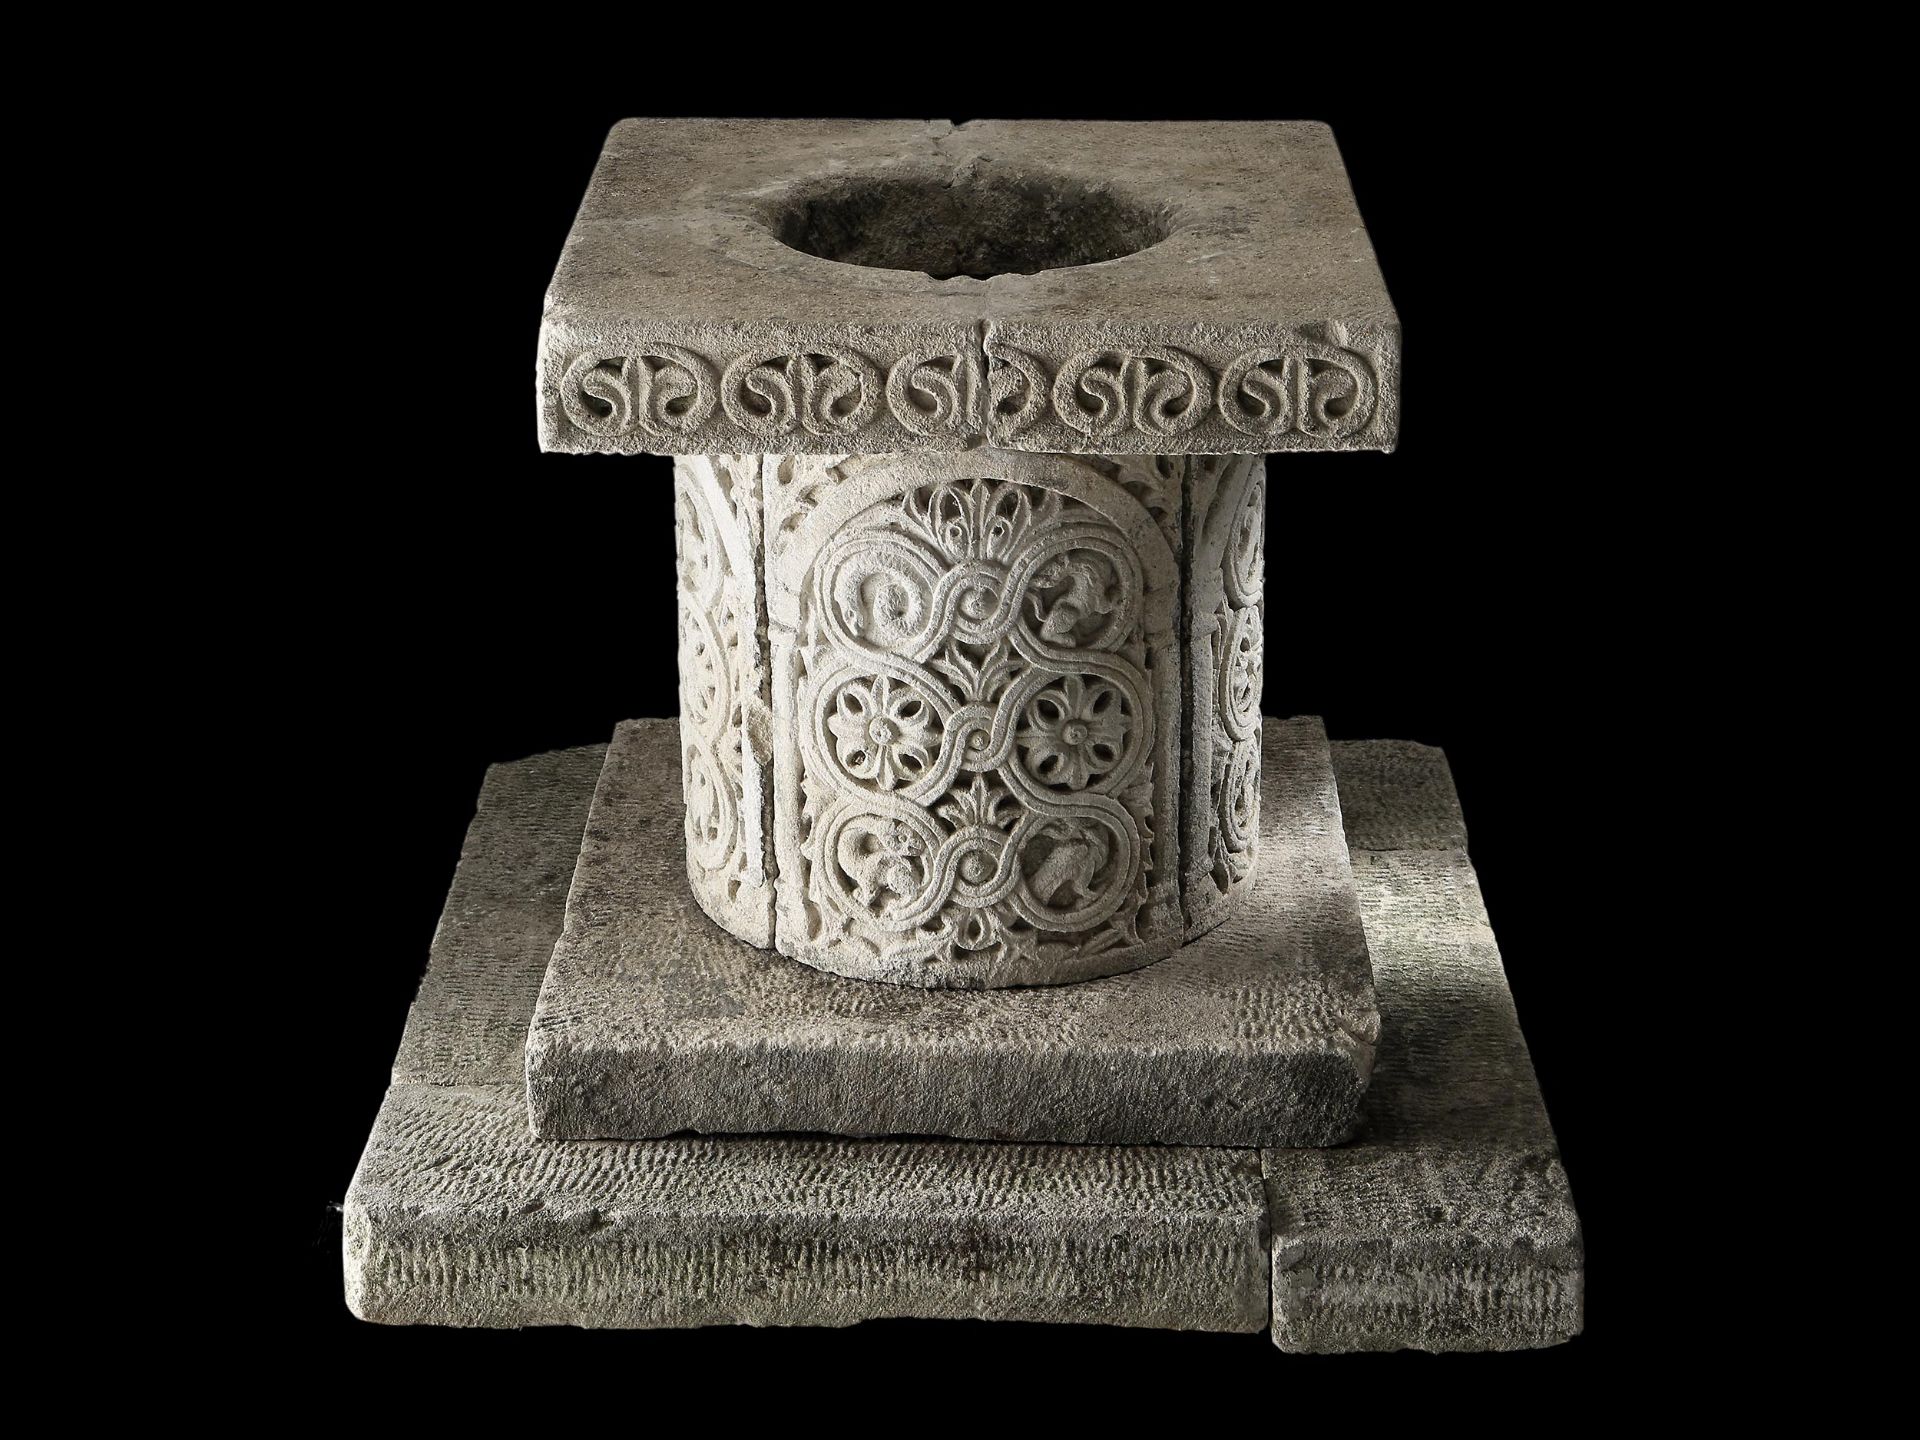 Schöne Einfassung eines überdeckelten Brunnens (Puteal) aus Aurisina-Stein